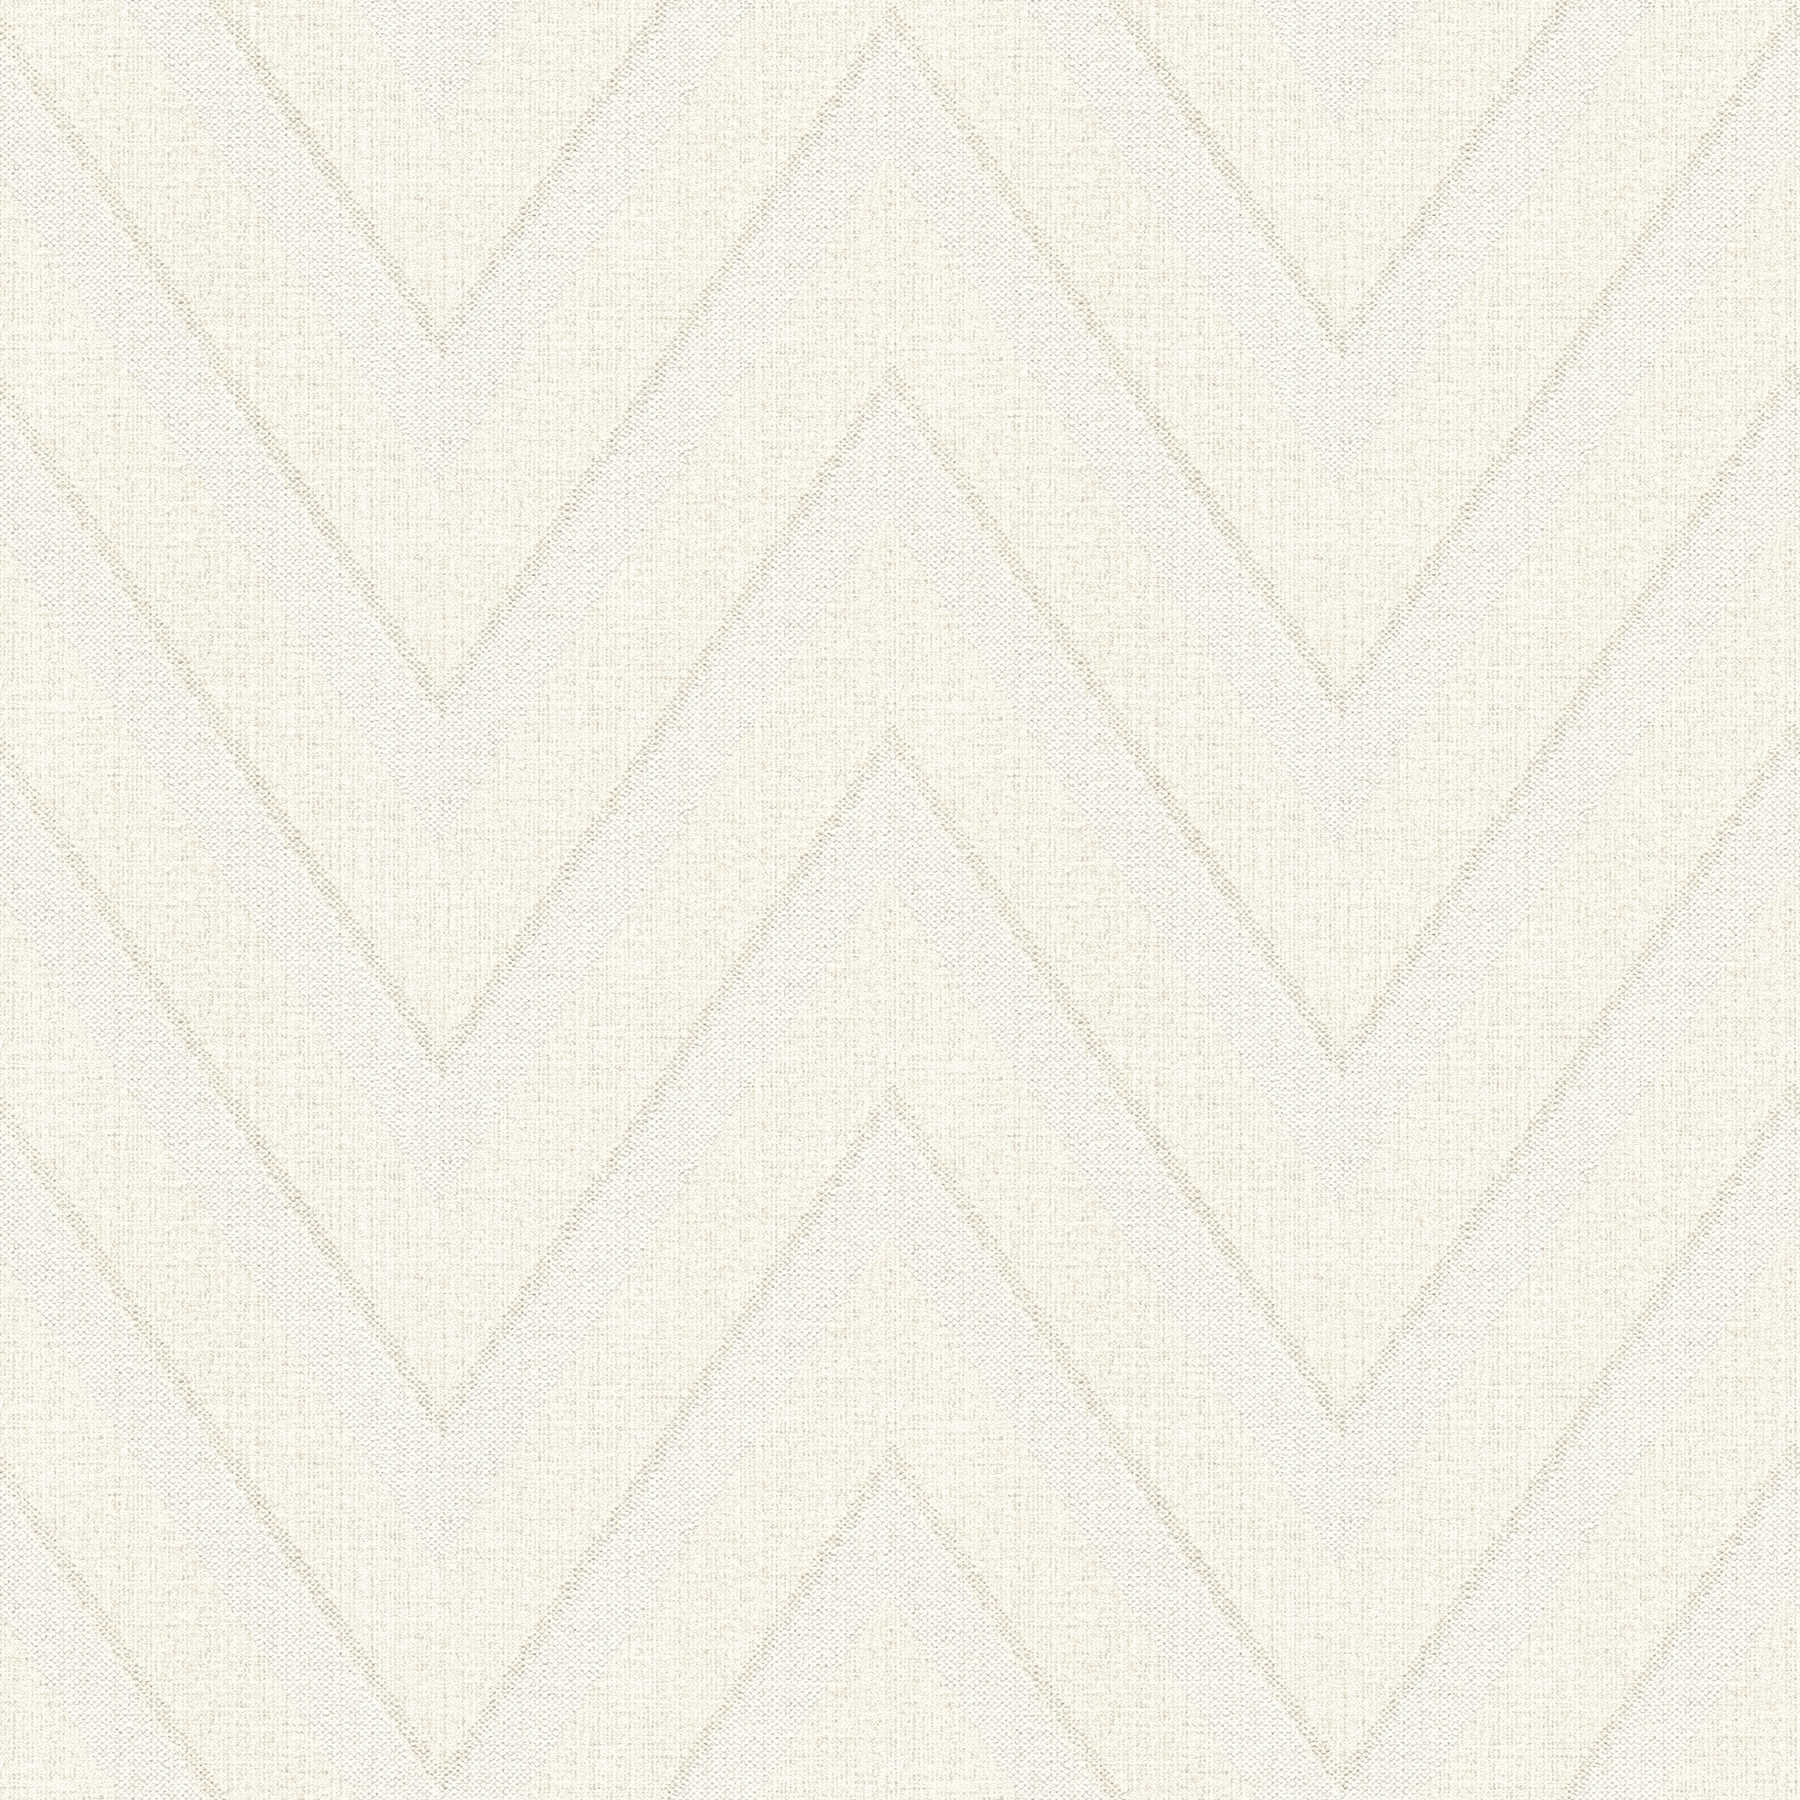         Papier peint aspect lin zigzag rayures - beige, crème
    